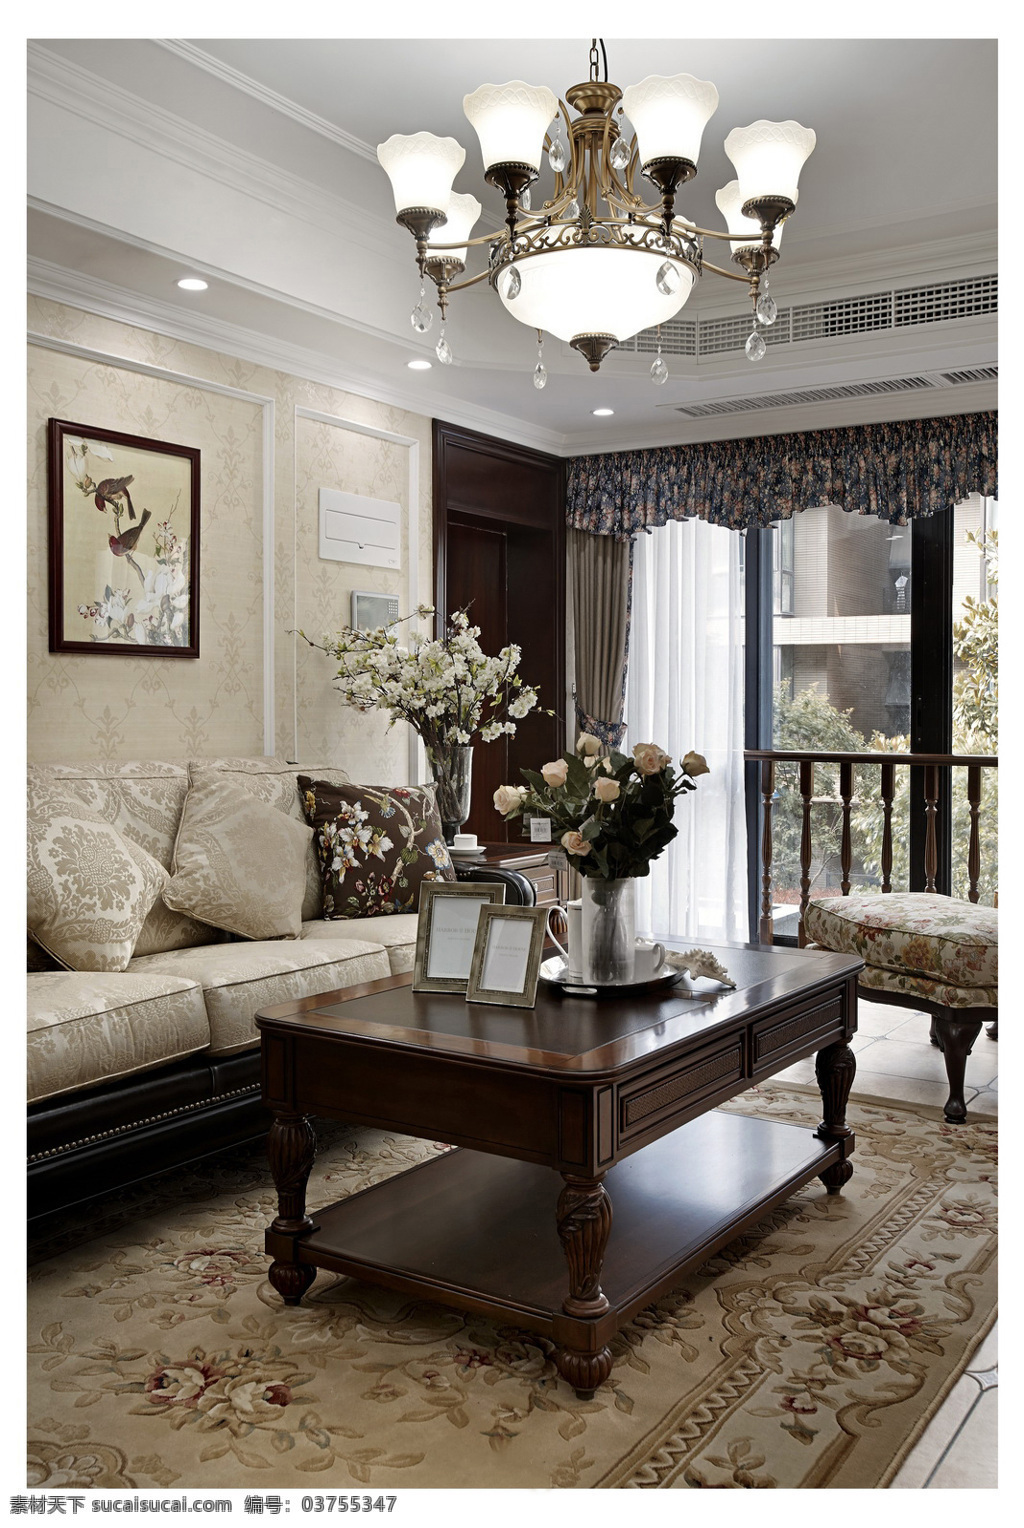 欧式 时尚 客厅 浅色 花纹 沙发 室内装修 效果图 花纹地毯 客厅装修 木制茶几 浅色地板